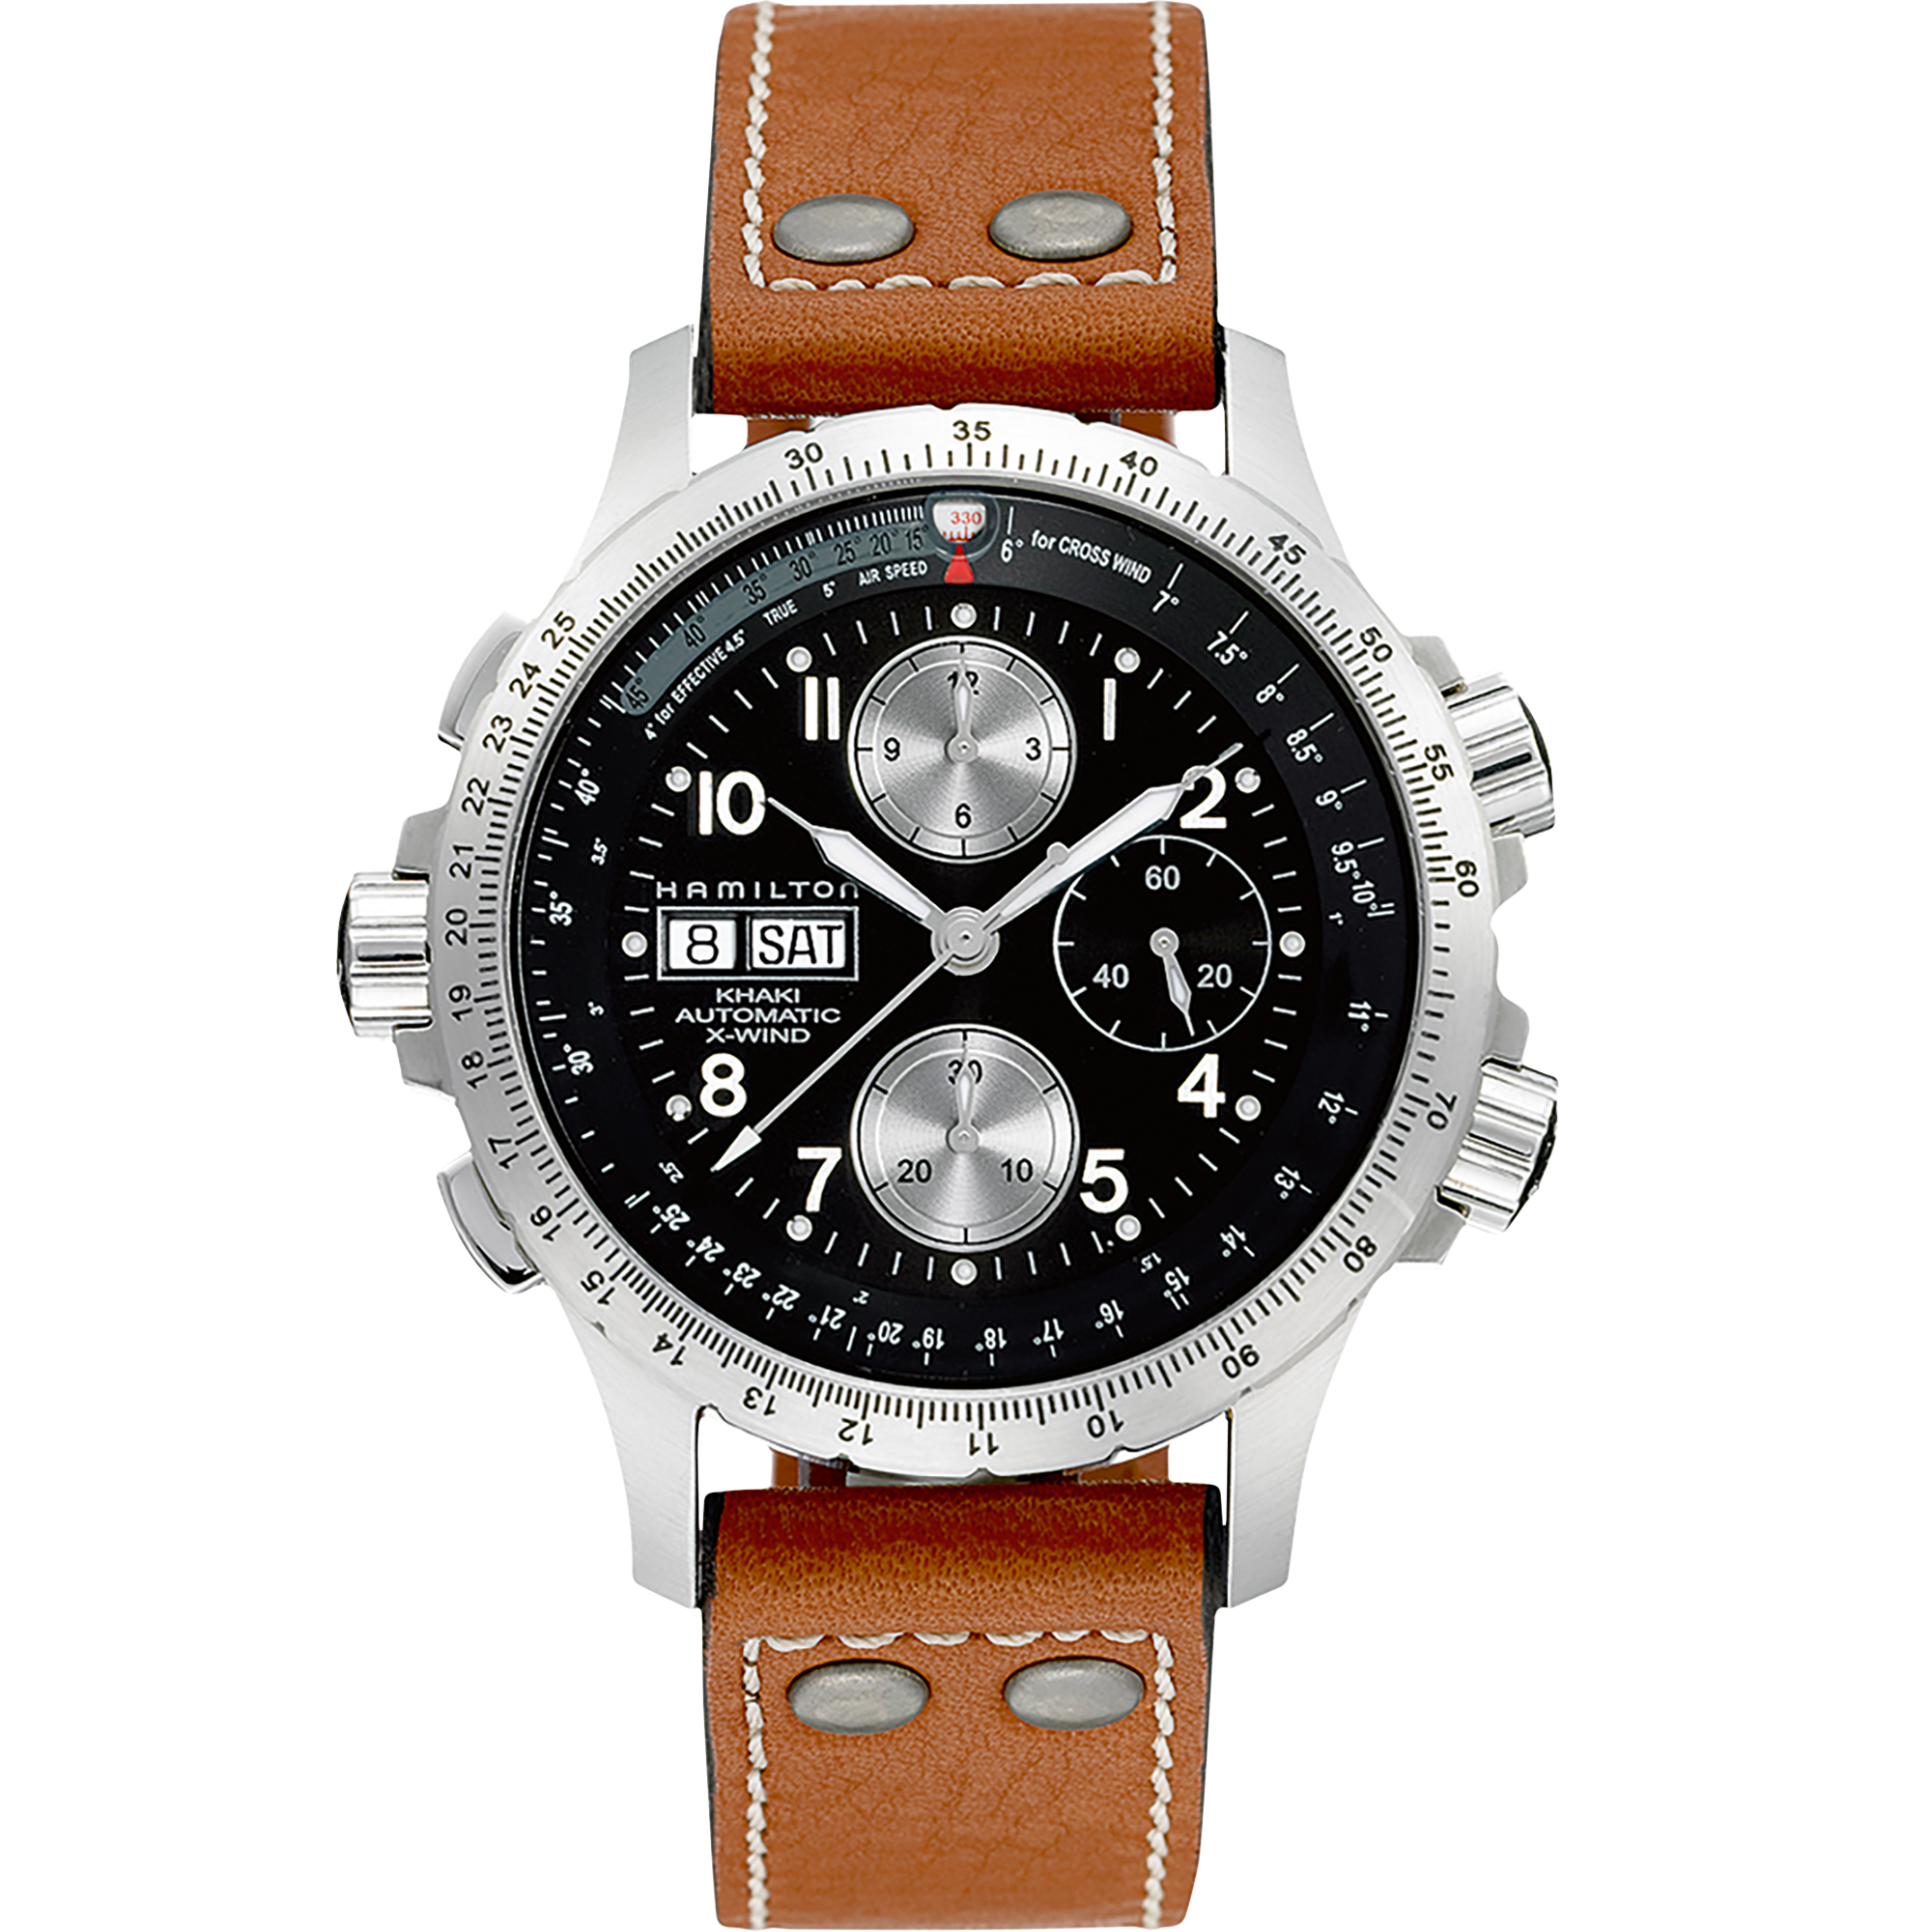 Khaki Aviation X-Wind Automatic Chronometer Watch - H77616533 